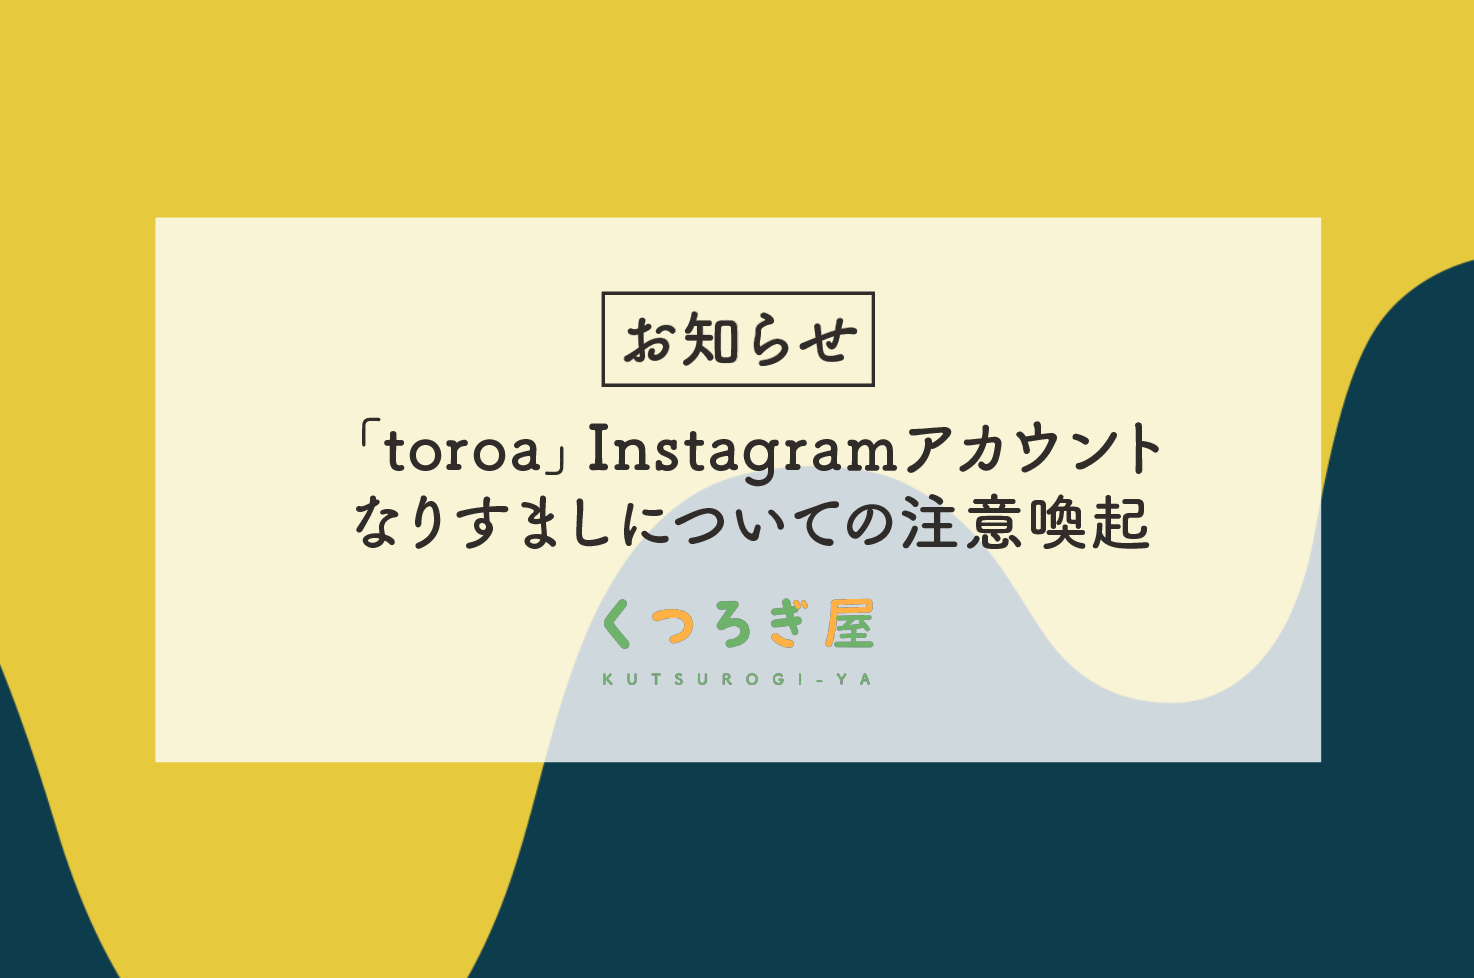 「toroa」Instagramアカウントなりすましについて注意喚起のお知らせ